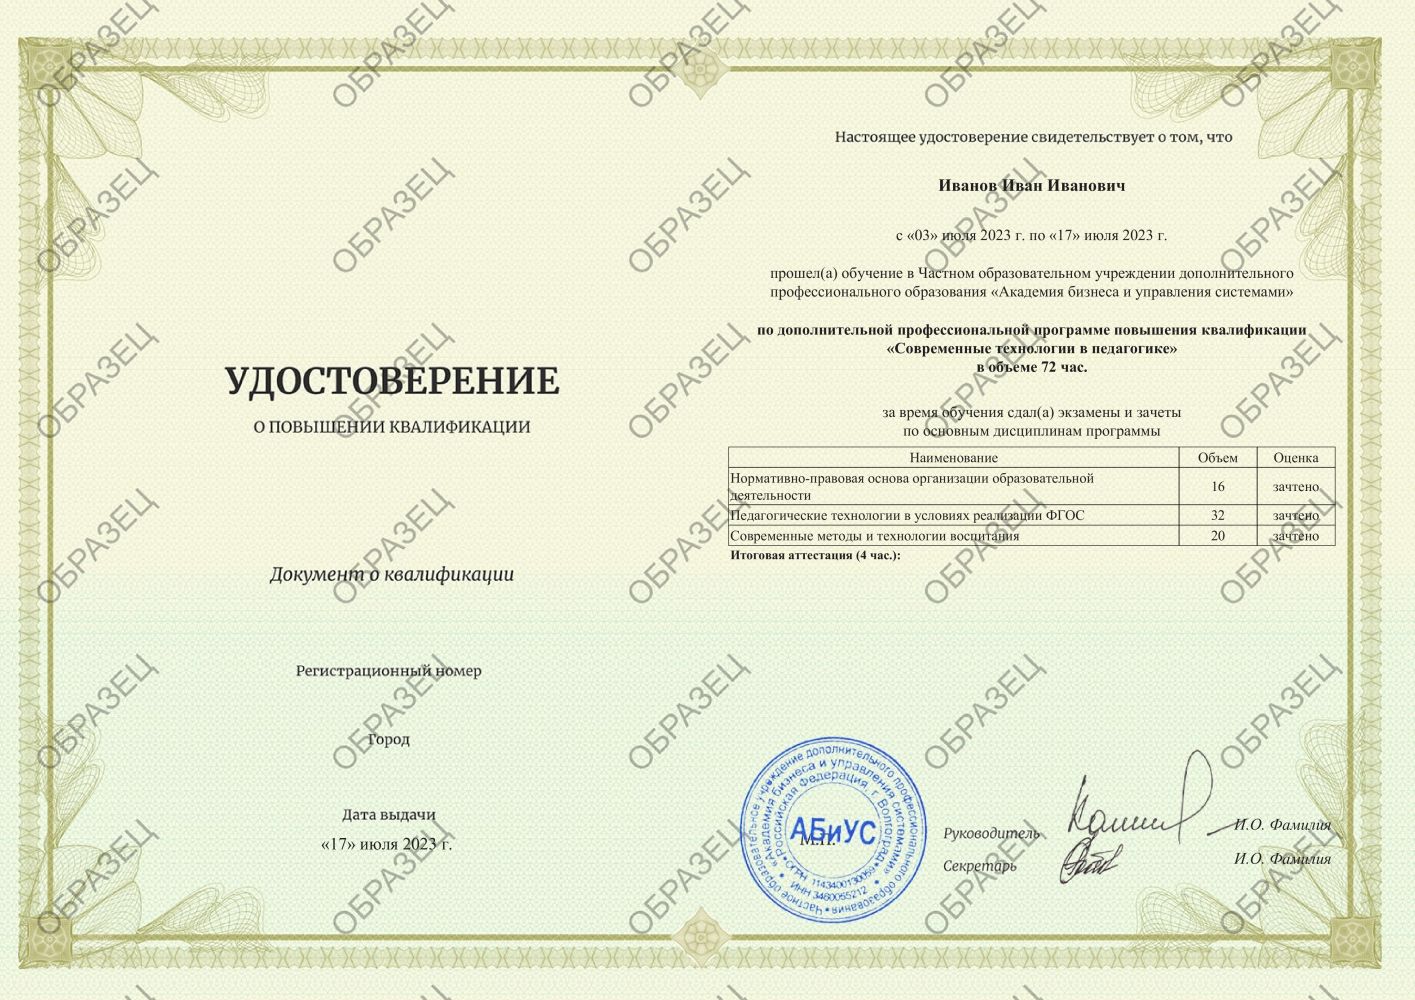 Удостоверение Современные технологии в педагогике 72 часа 2750 руб.